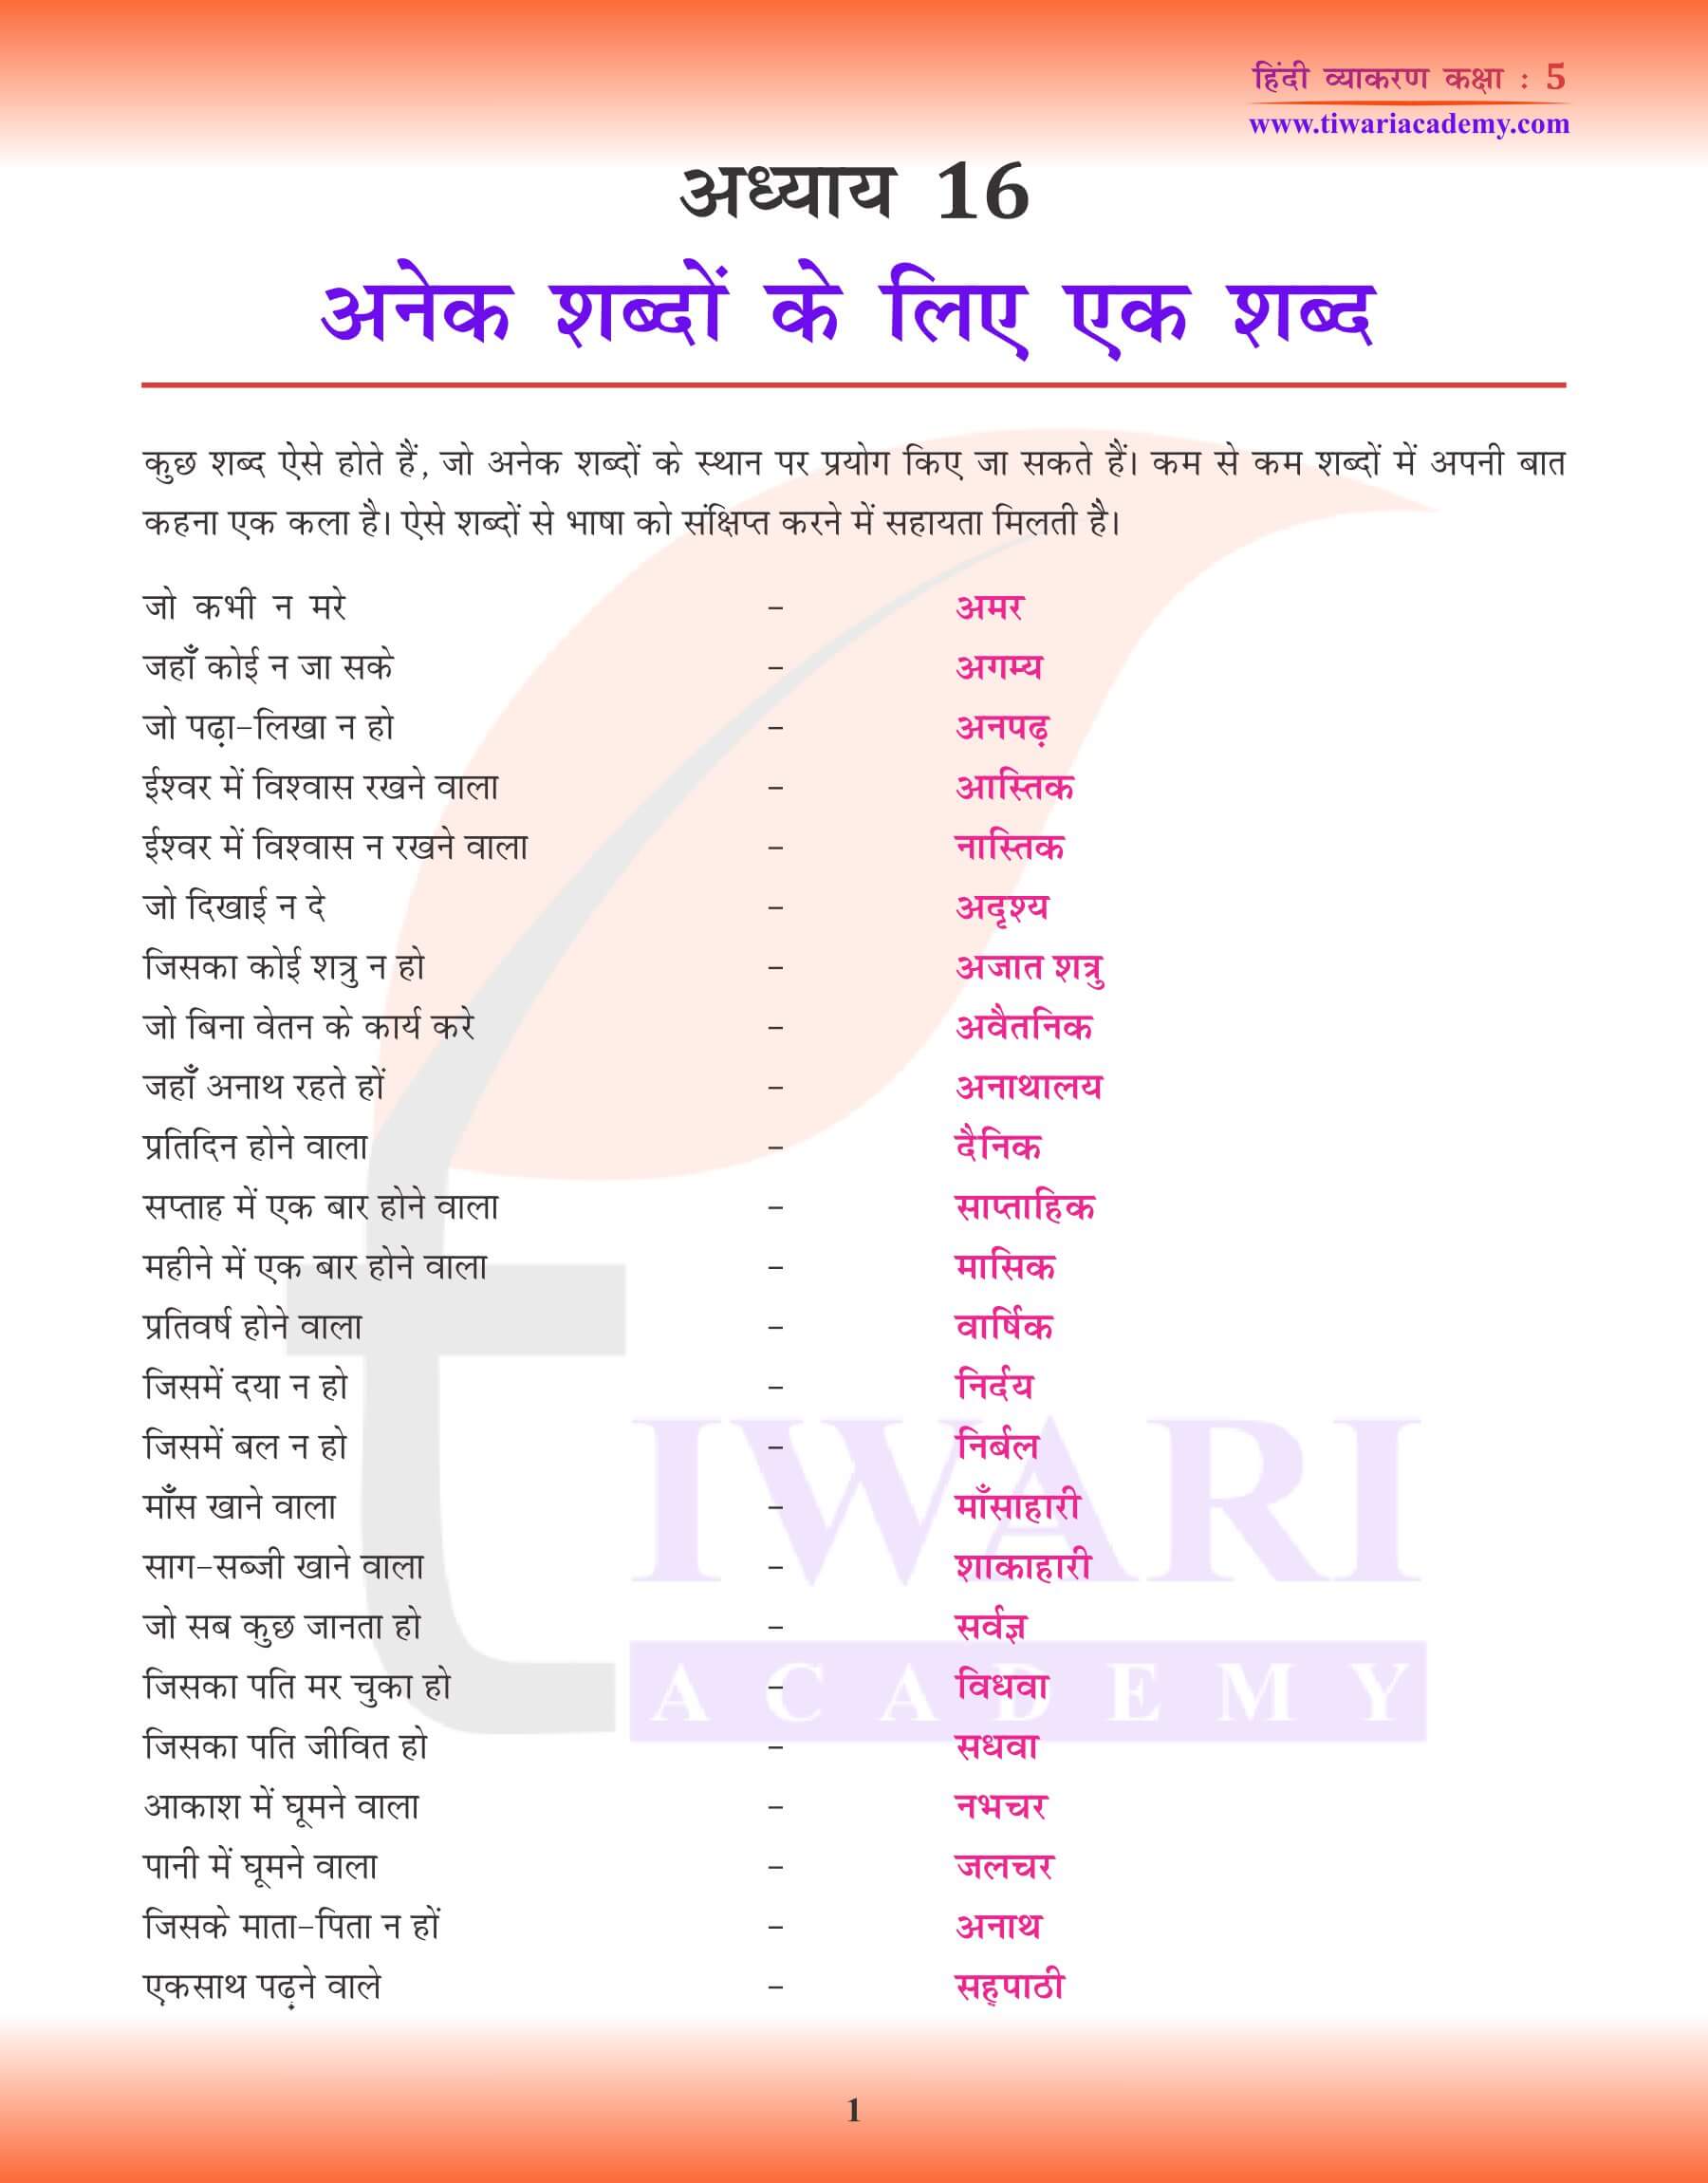 हिंदी व्याकरण में अनेक शब्दों के लिए एक शब्द